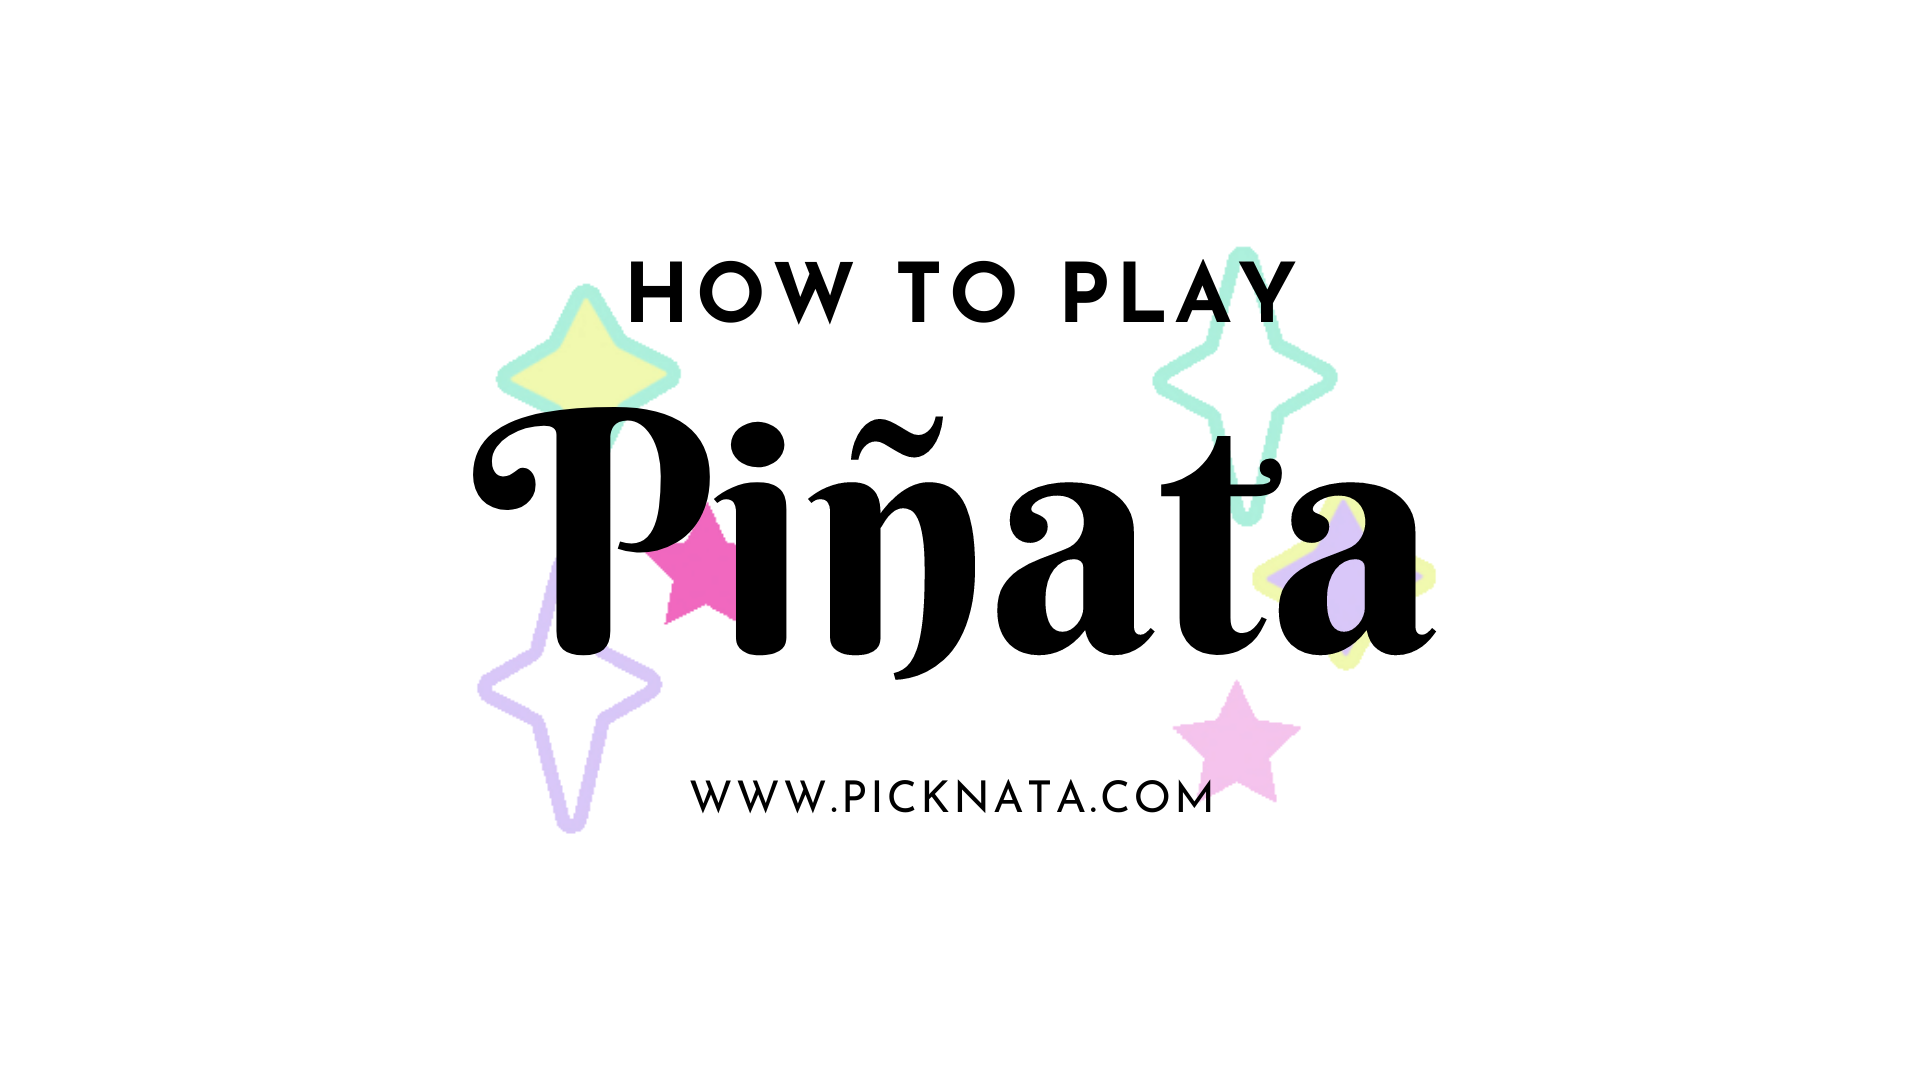 How to play piñata